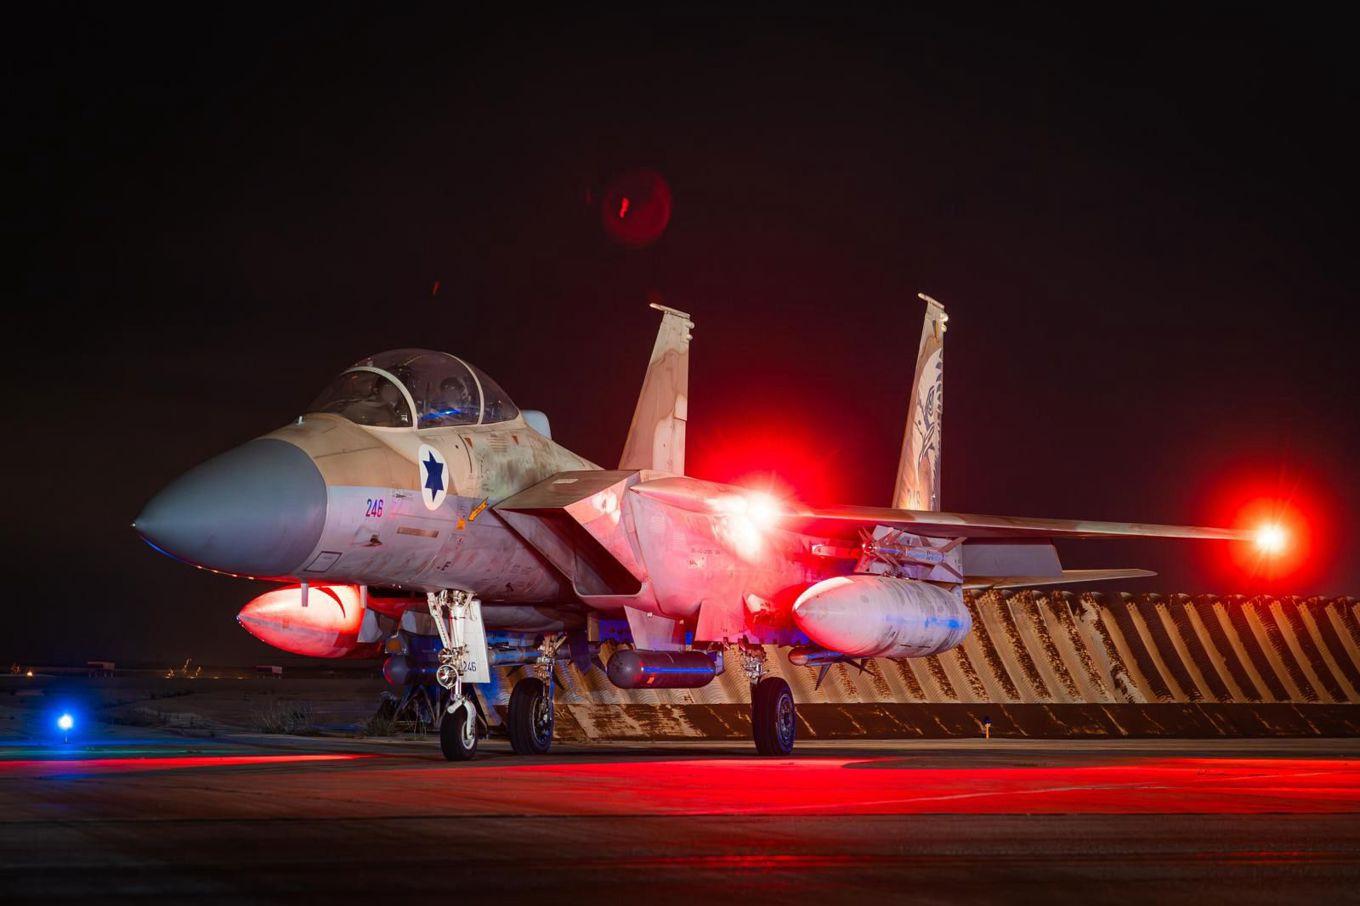 Israeliskt stridsflyg som landat efter att ha försvarat luftrummet under Irans attack under natten mot söndagen, enligt Israels militär. Foto: Israel Defense Forces handout/TT